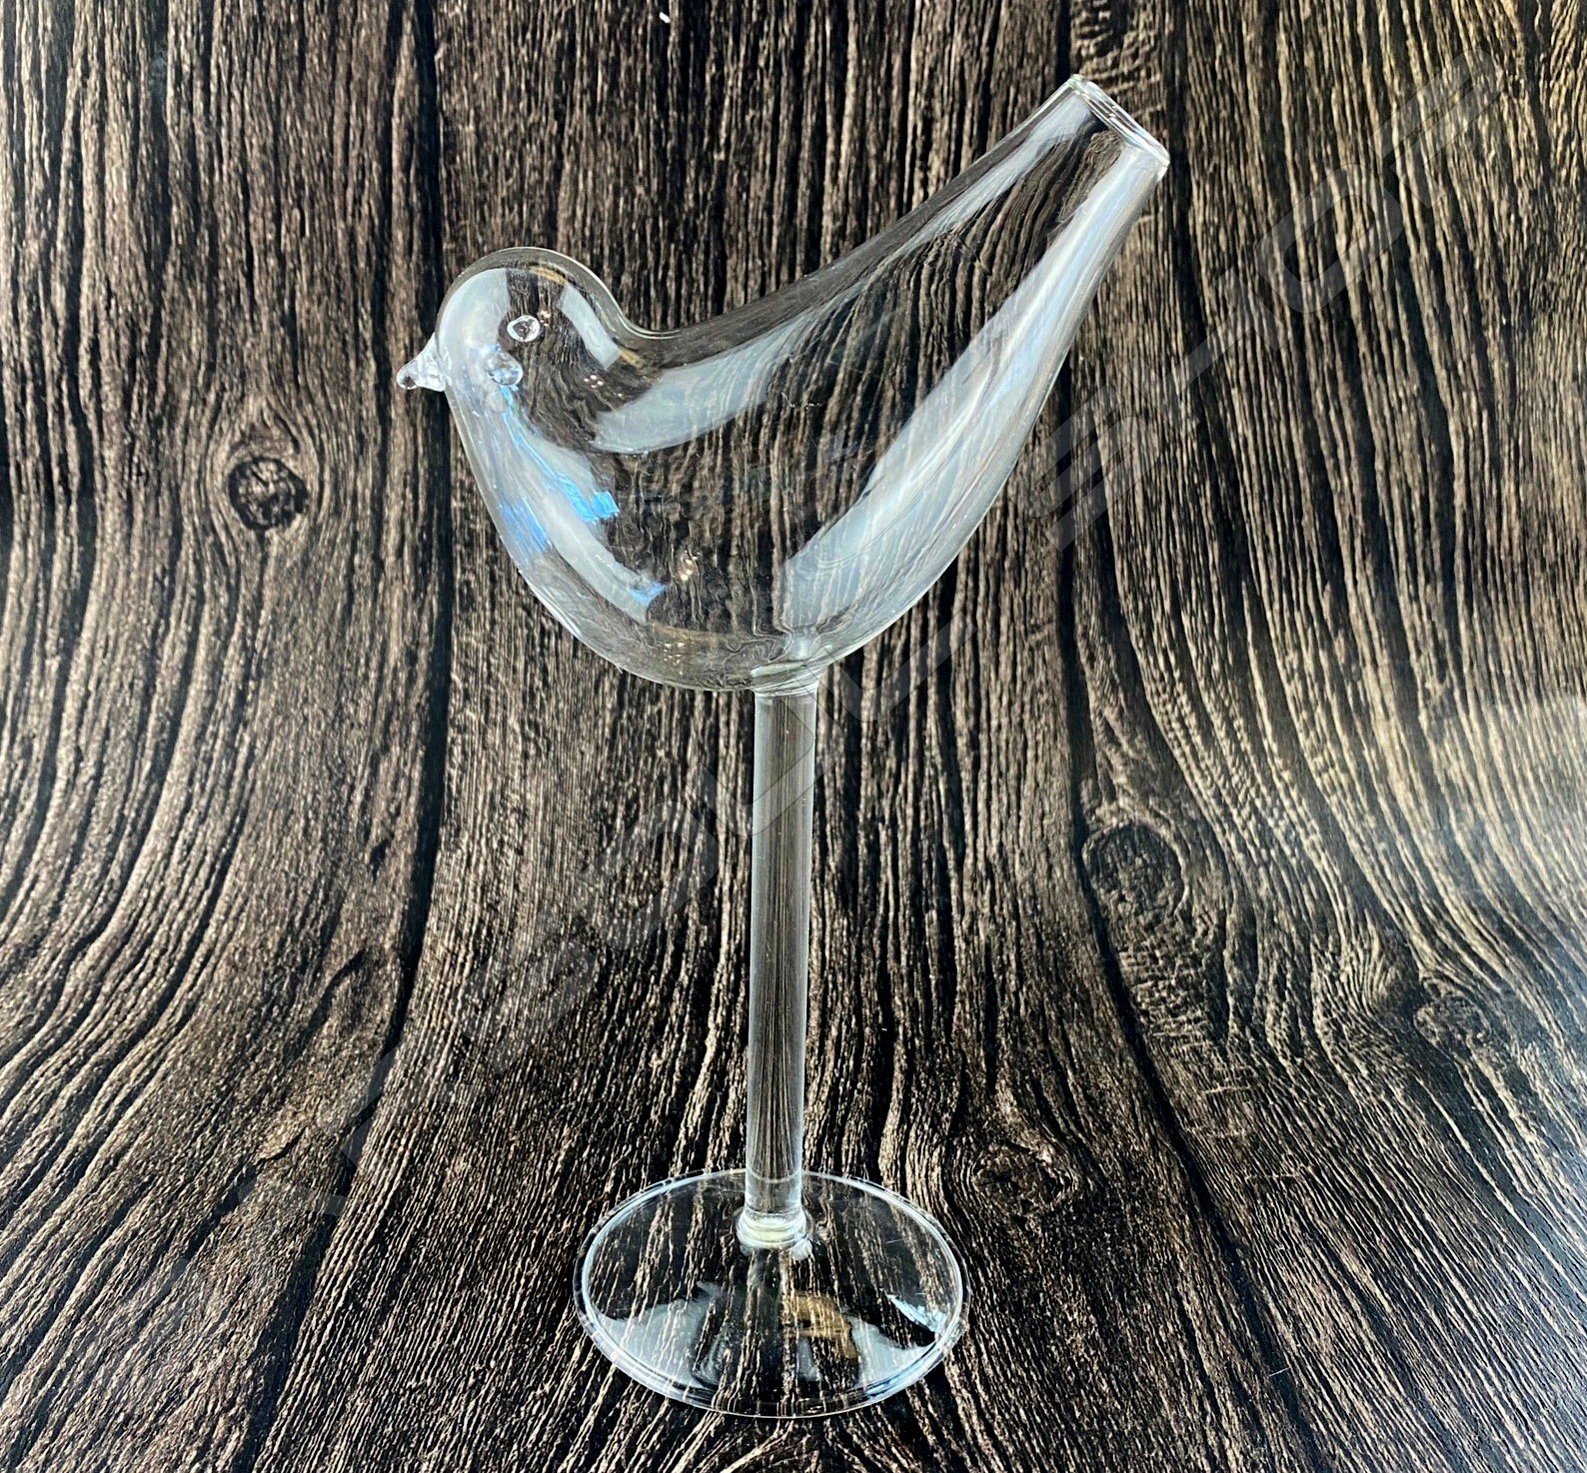 小鳥玻璃高腳杯150ml/H205 Bird classic high glass